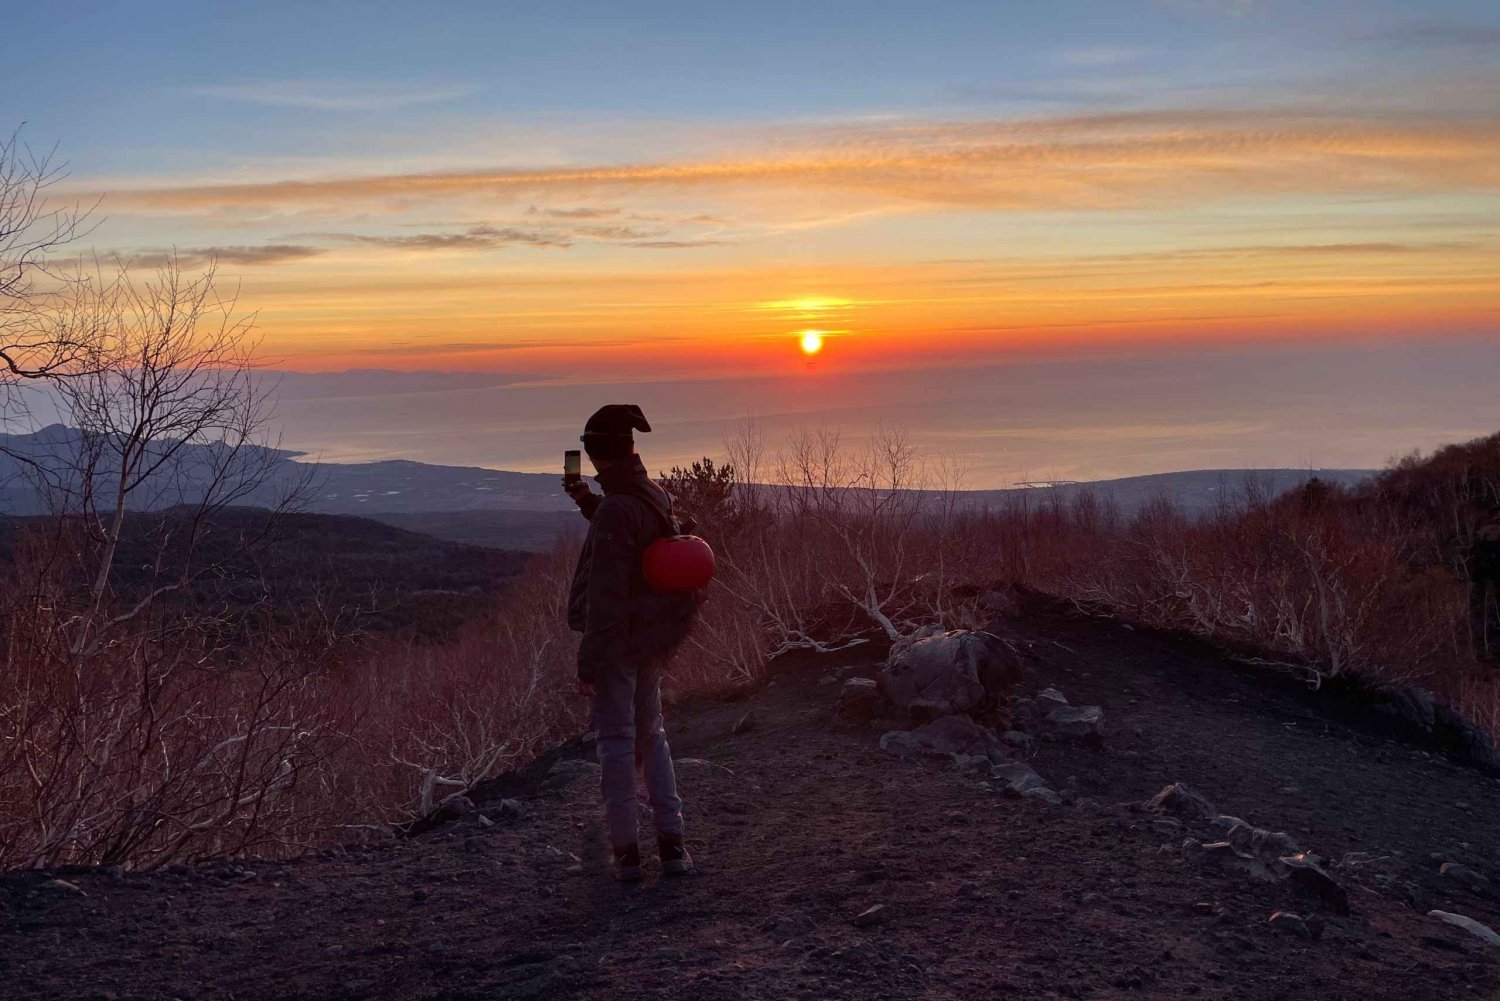 Berget Etna: Utflykt i soluppgången med en lokal expertguide